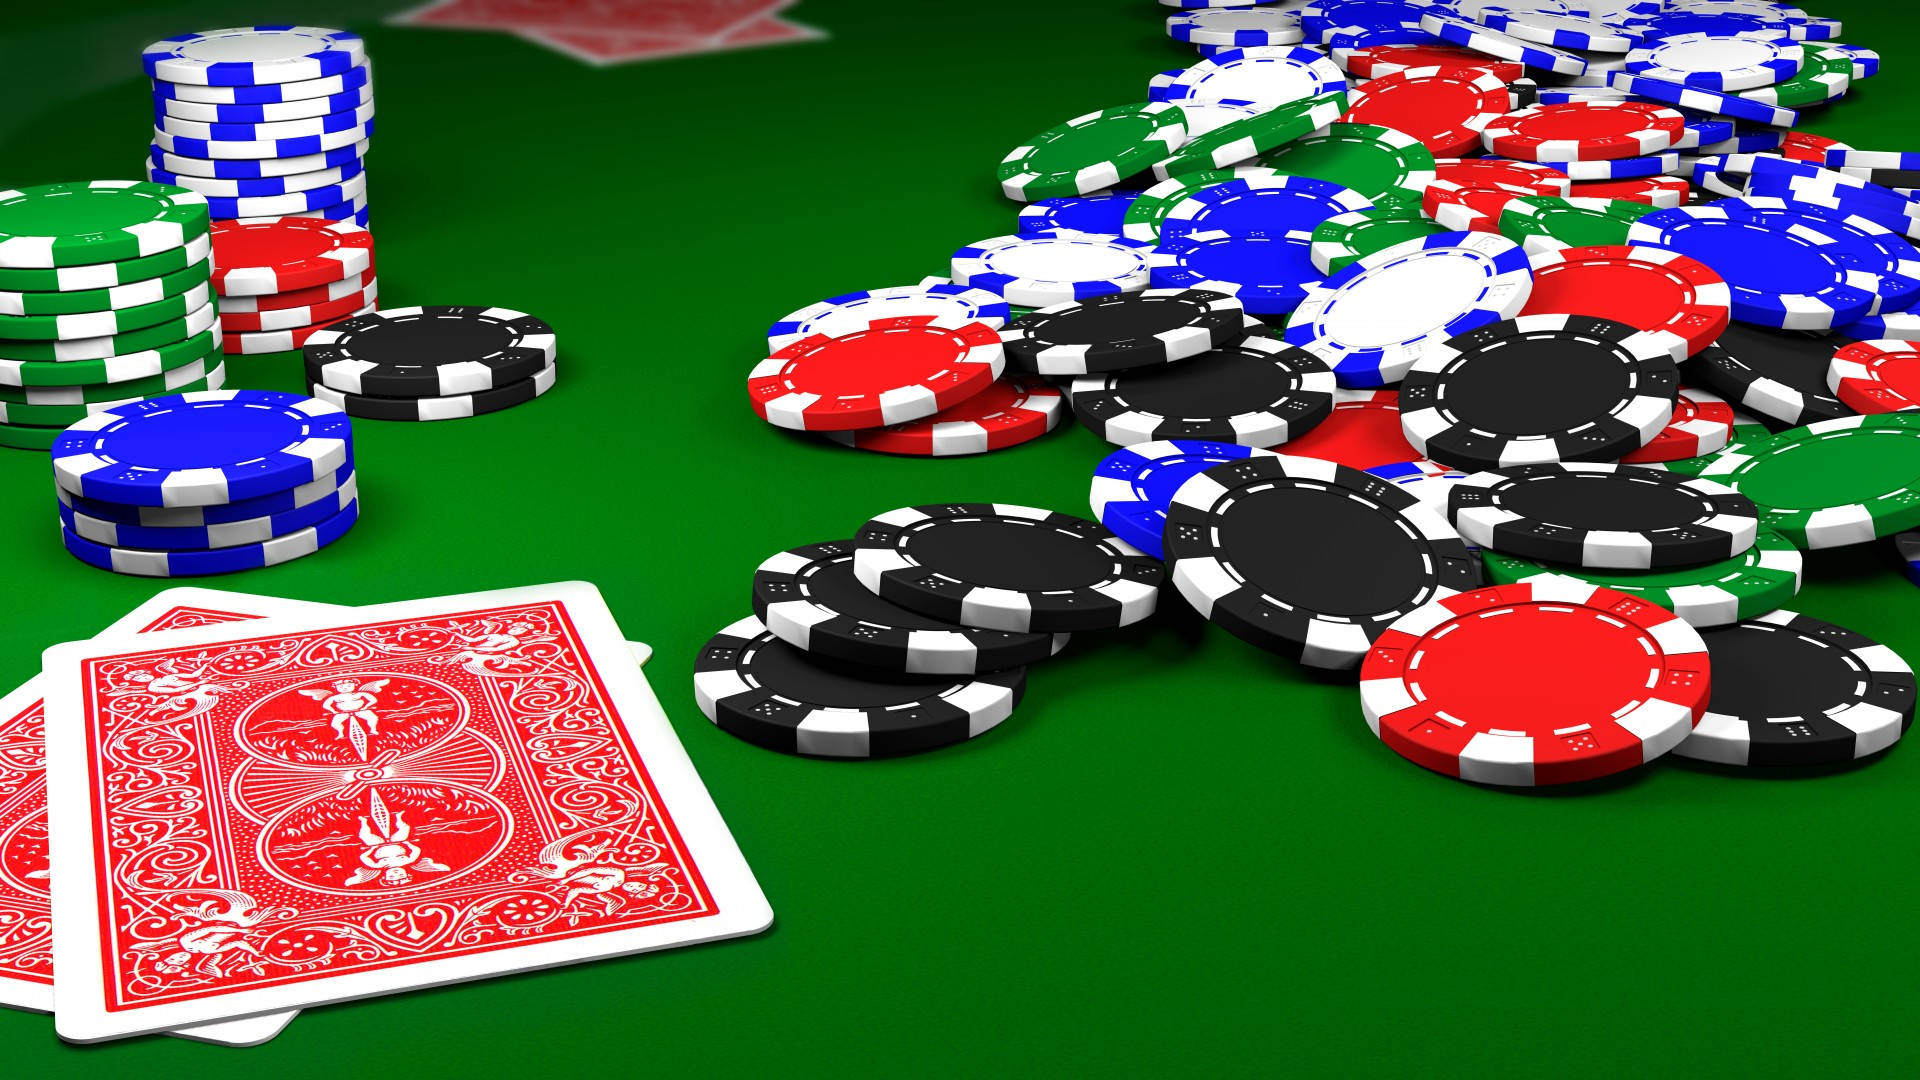 Pokerbordnärbeslagsbild Wallpaper